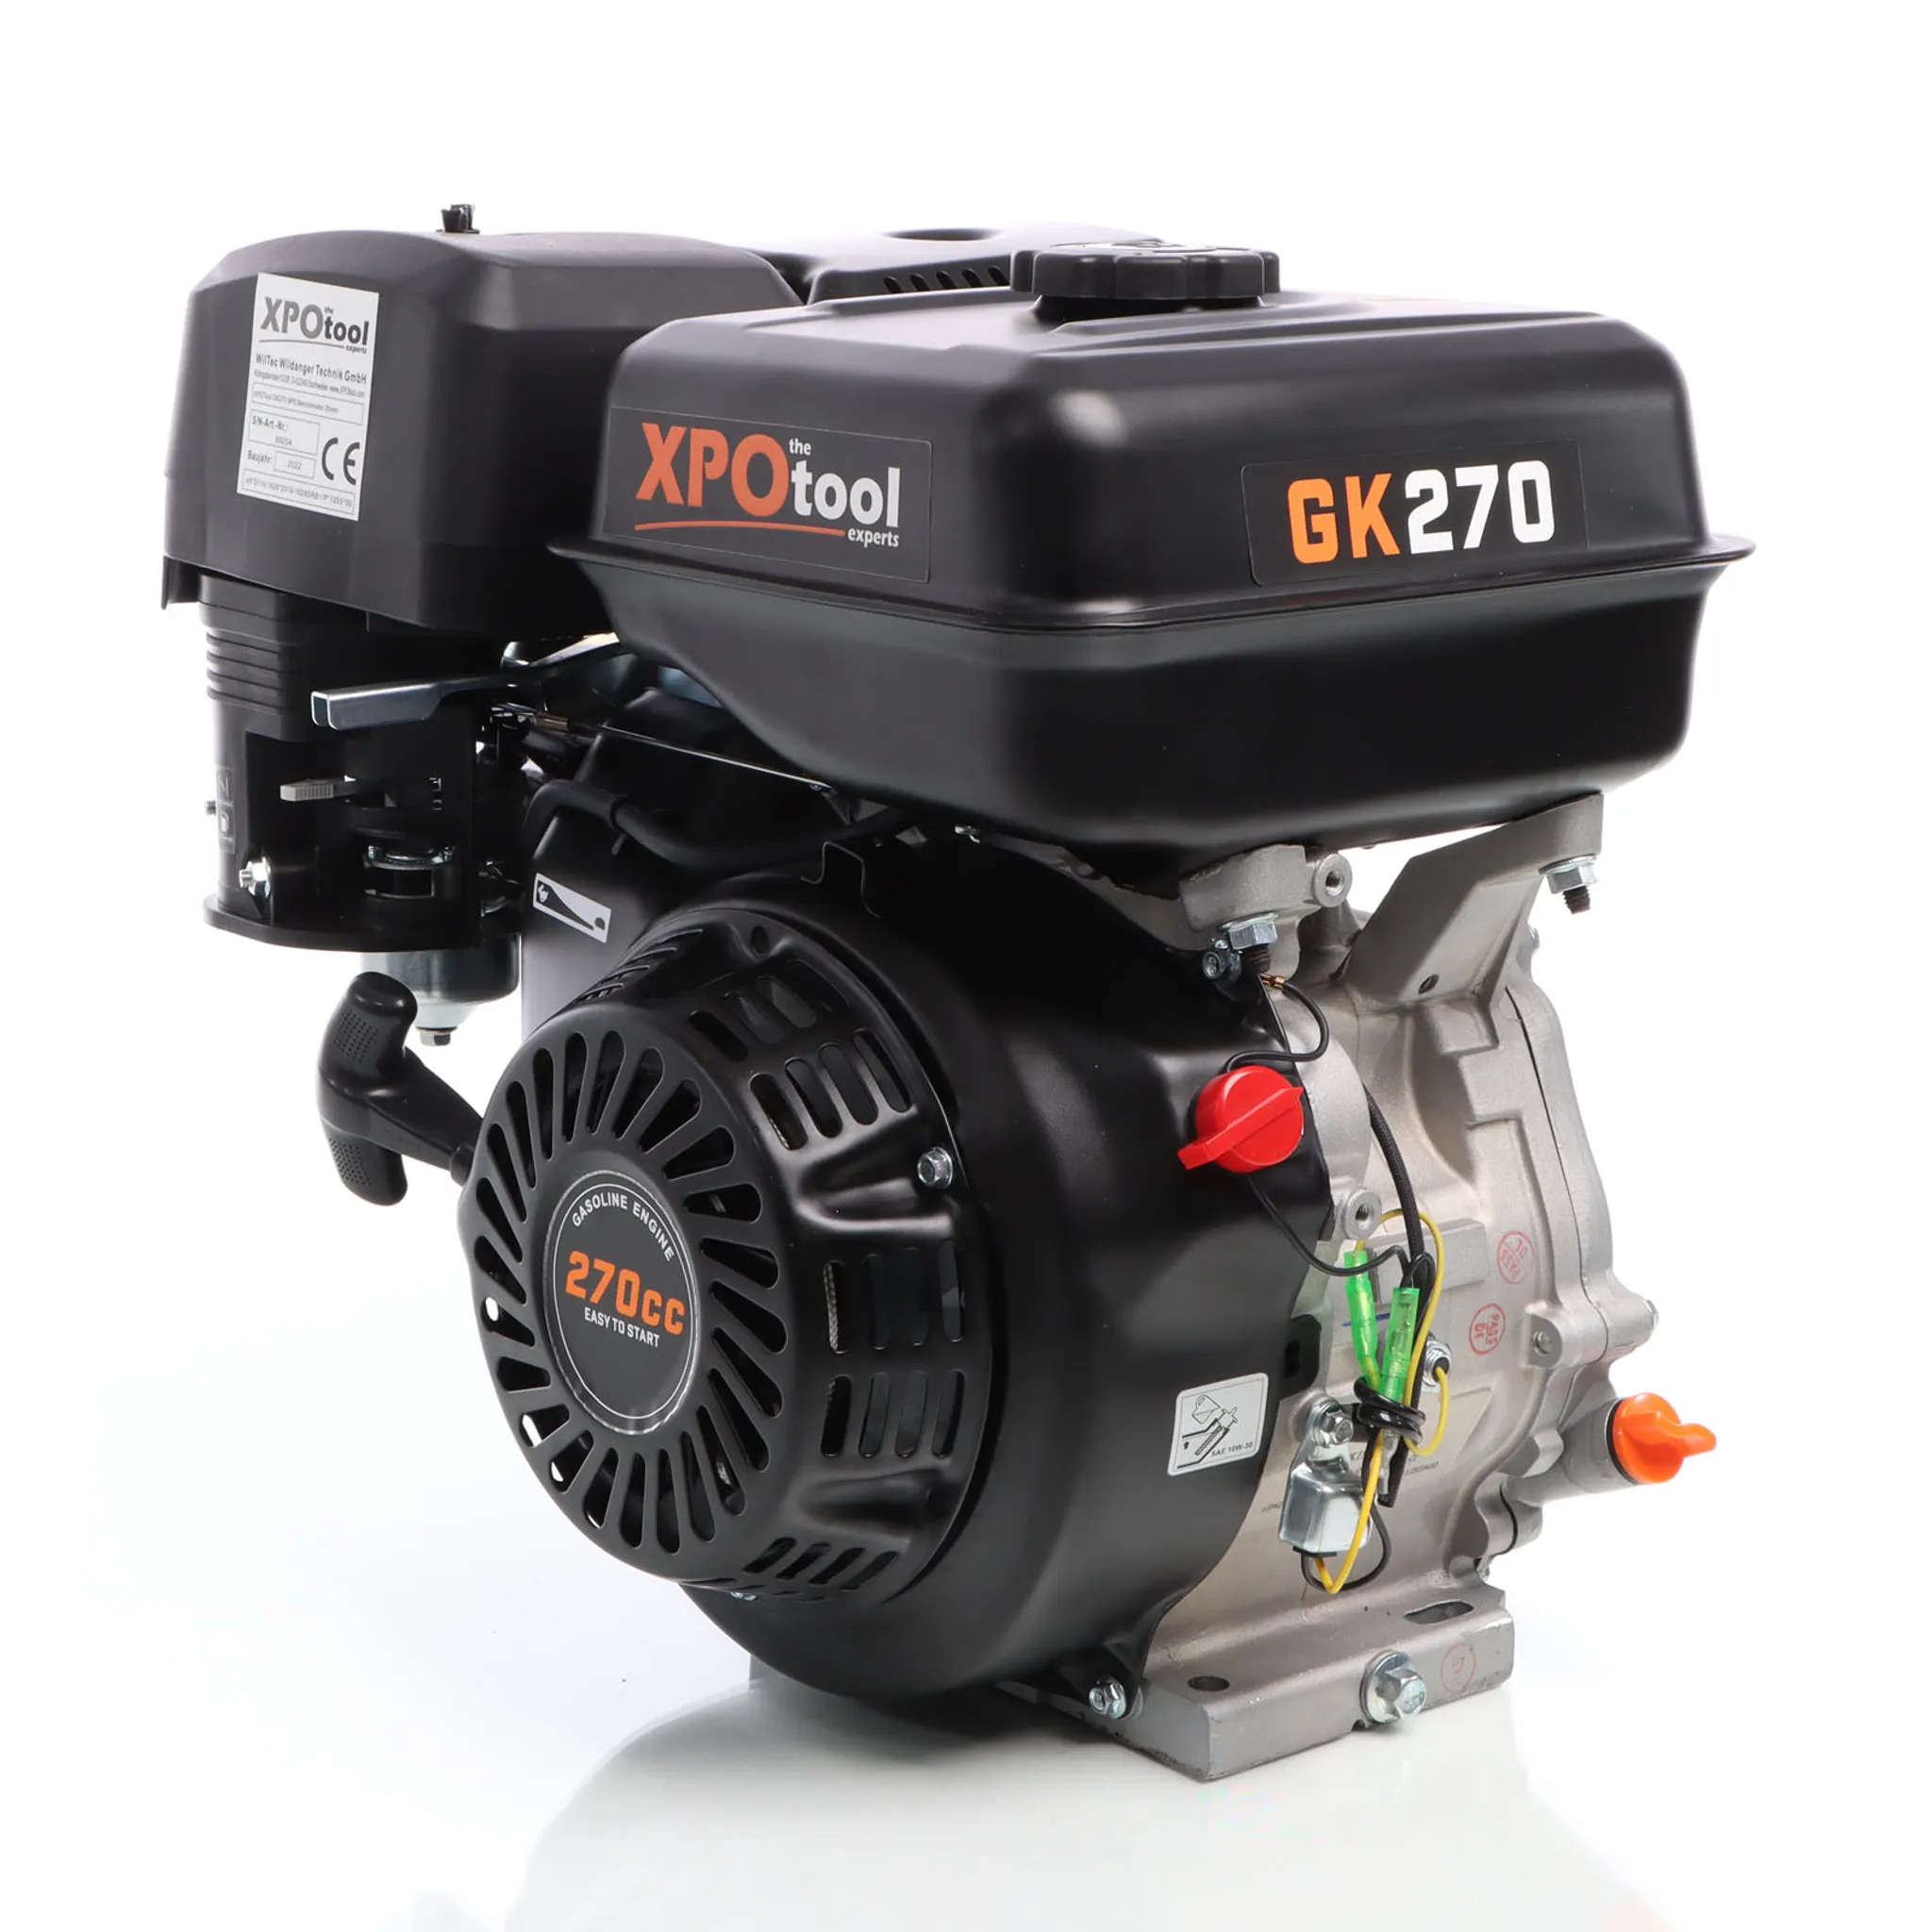 Benzinmotor Standmotor 7,5PS 4-Takt 3600U/min